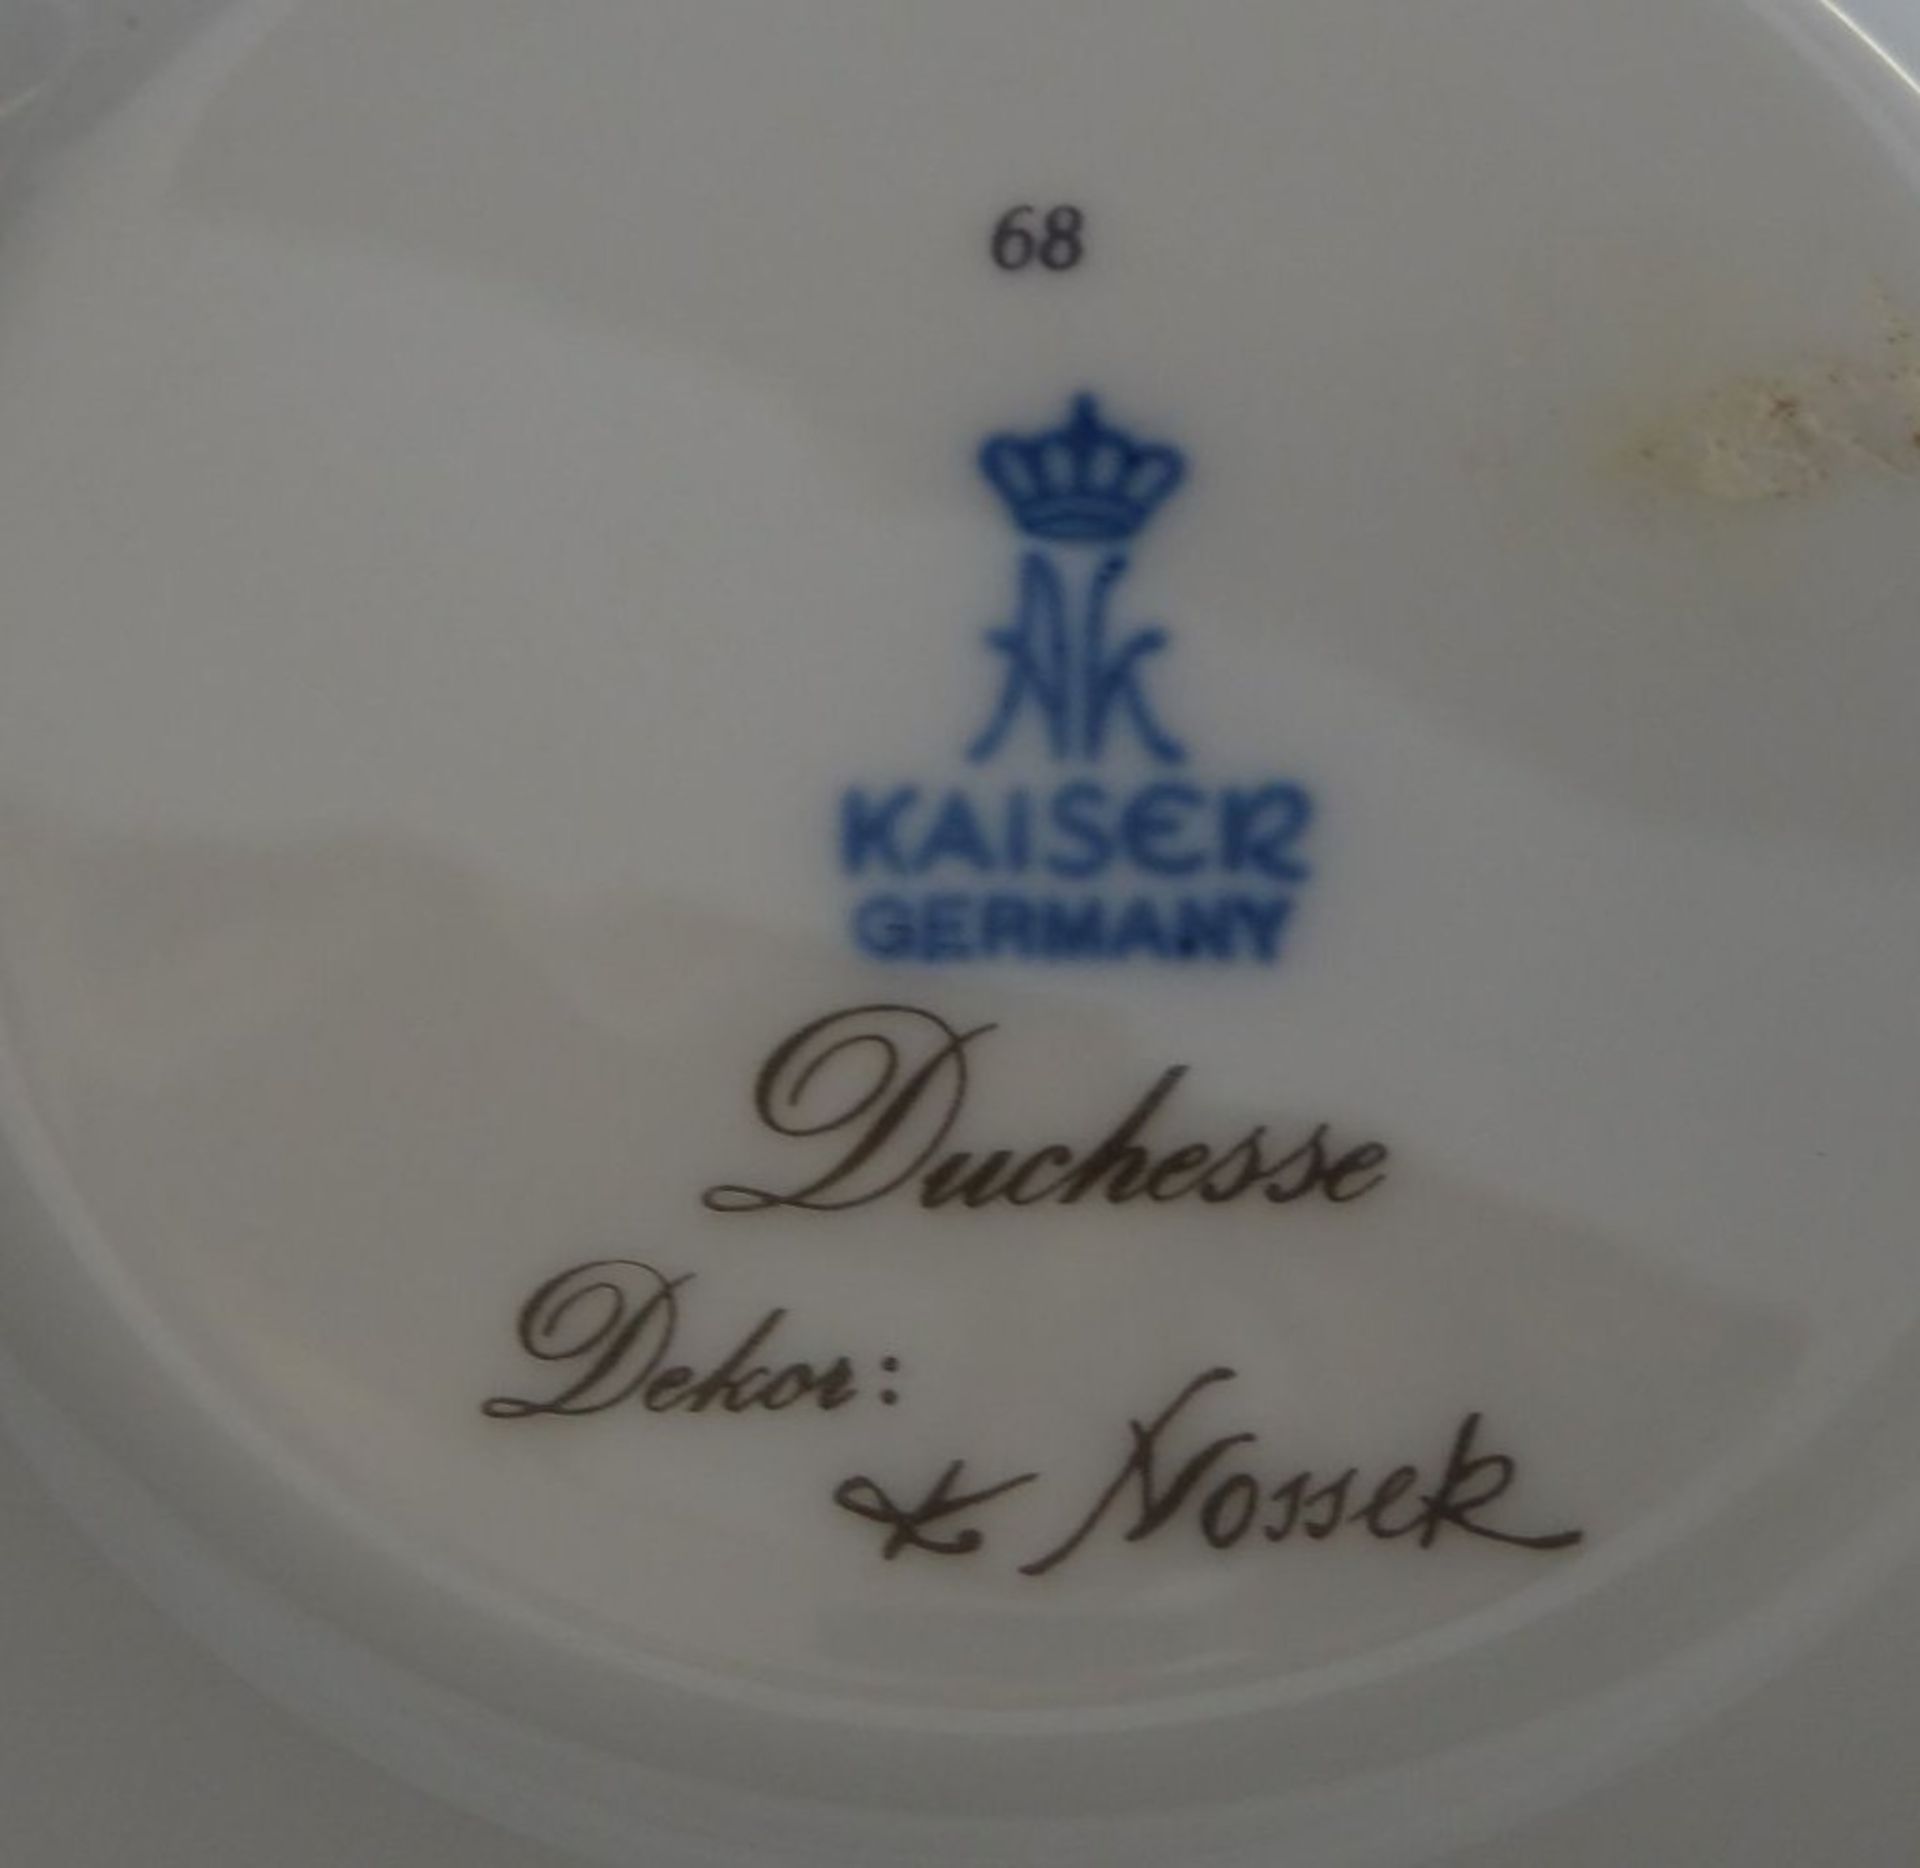 gr. Henkelvase "Duchesse" von Kaiser, Entw. Nosseck, H-17 cm - Image 5 of 5